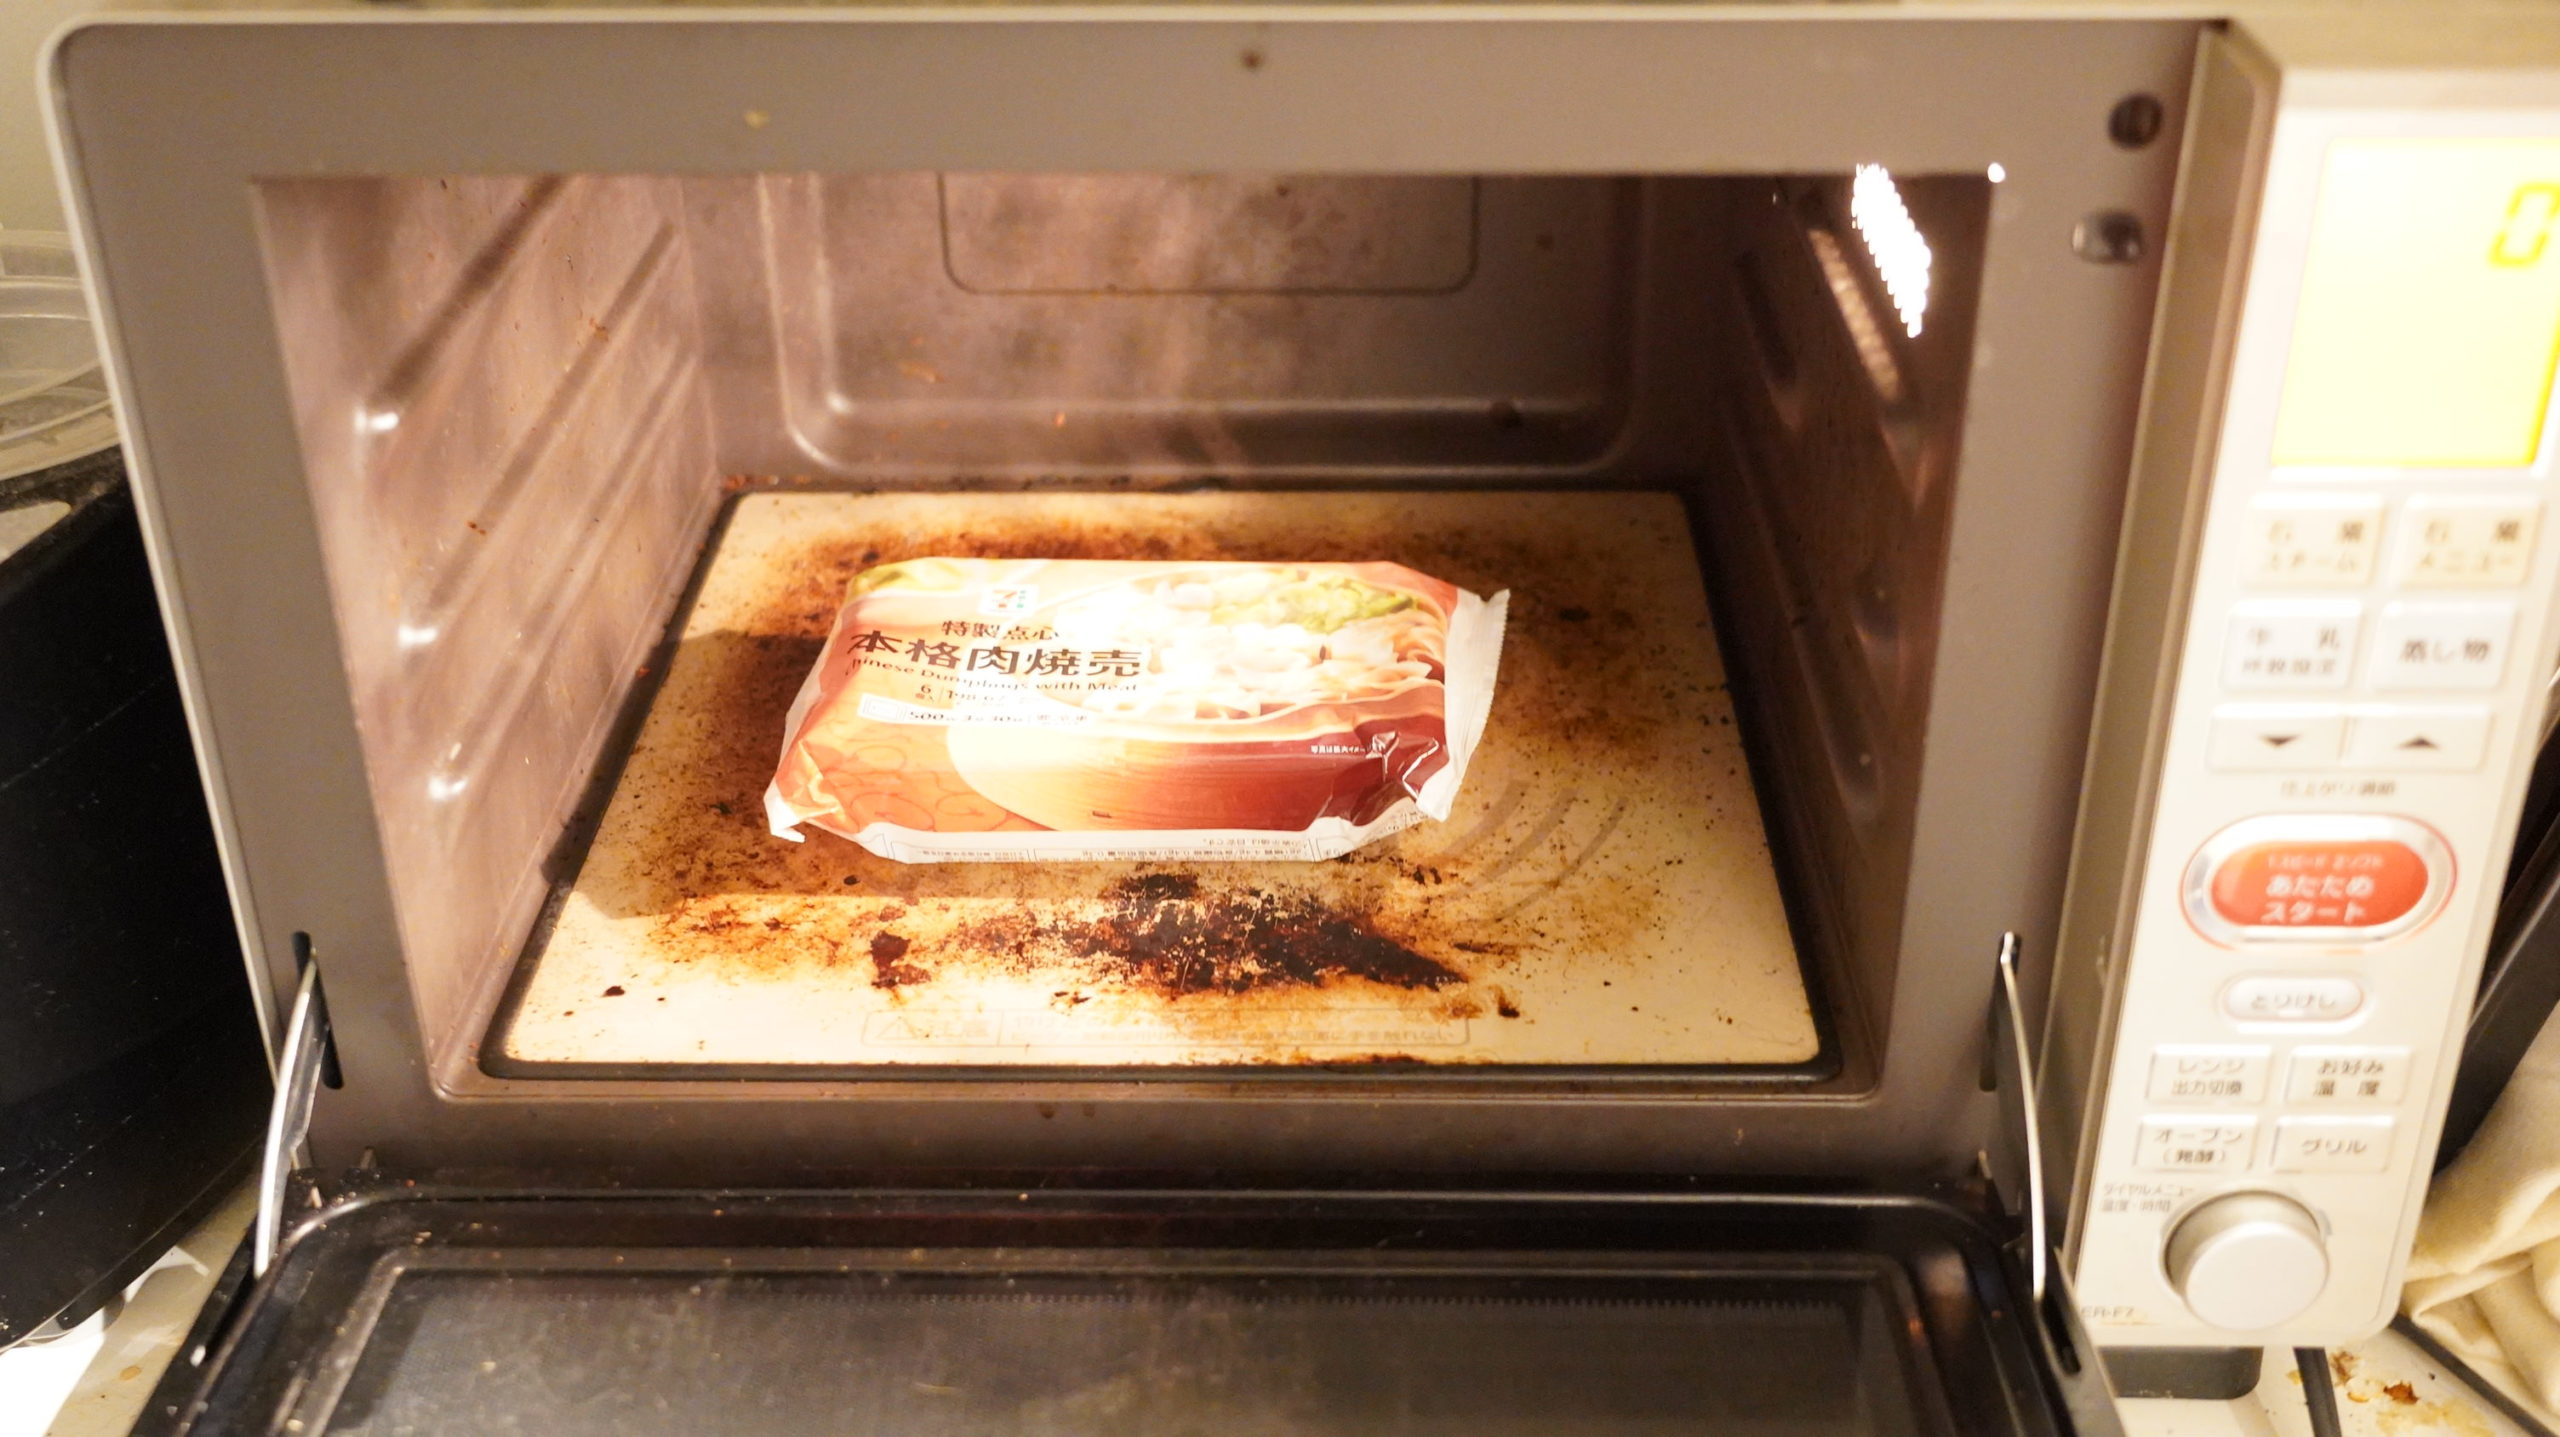 セブンイレブンの冷凍食品「特製点心・本格肉焼売」を電子レンジで加熱している写真